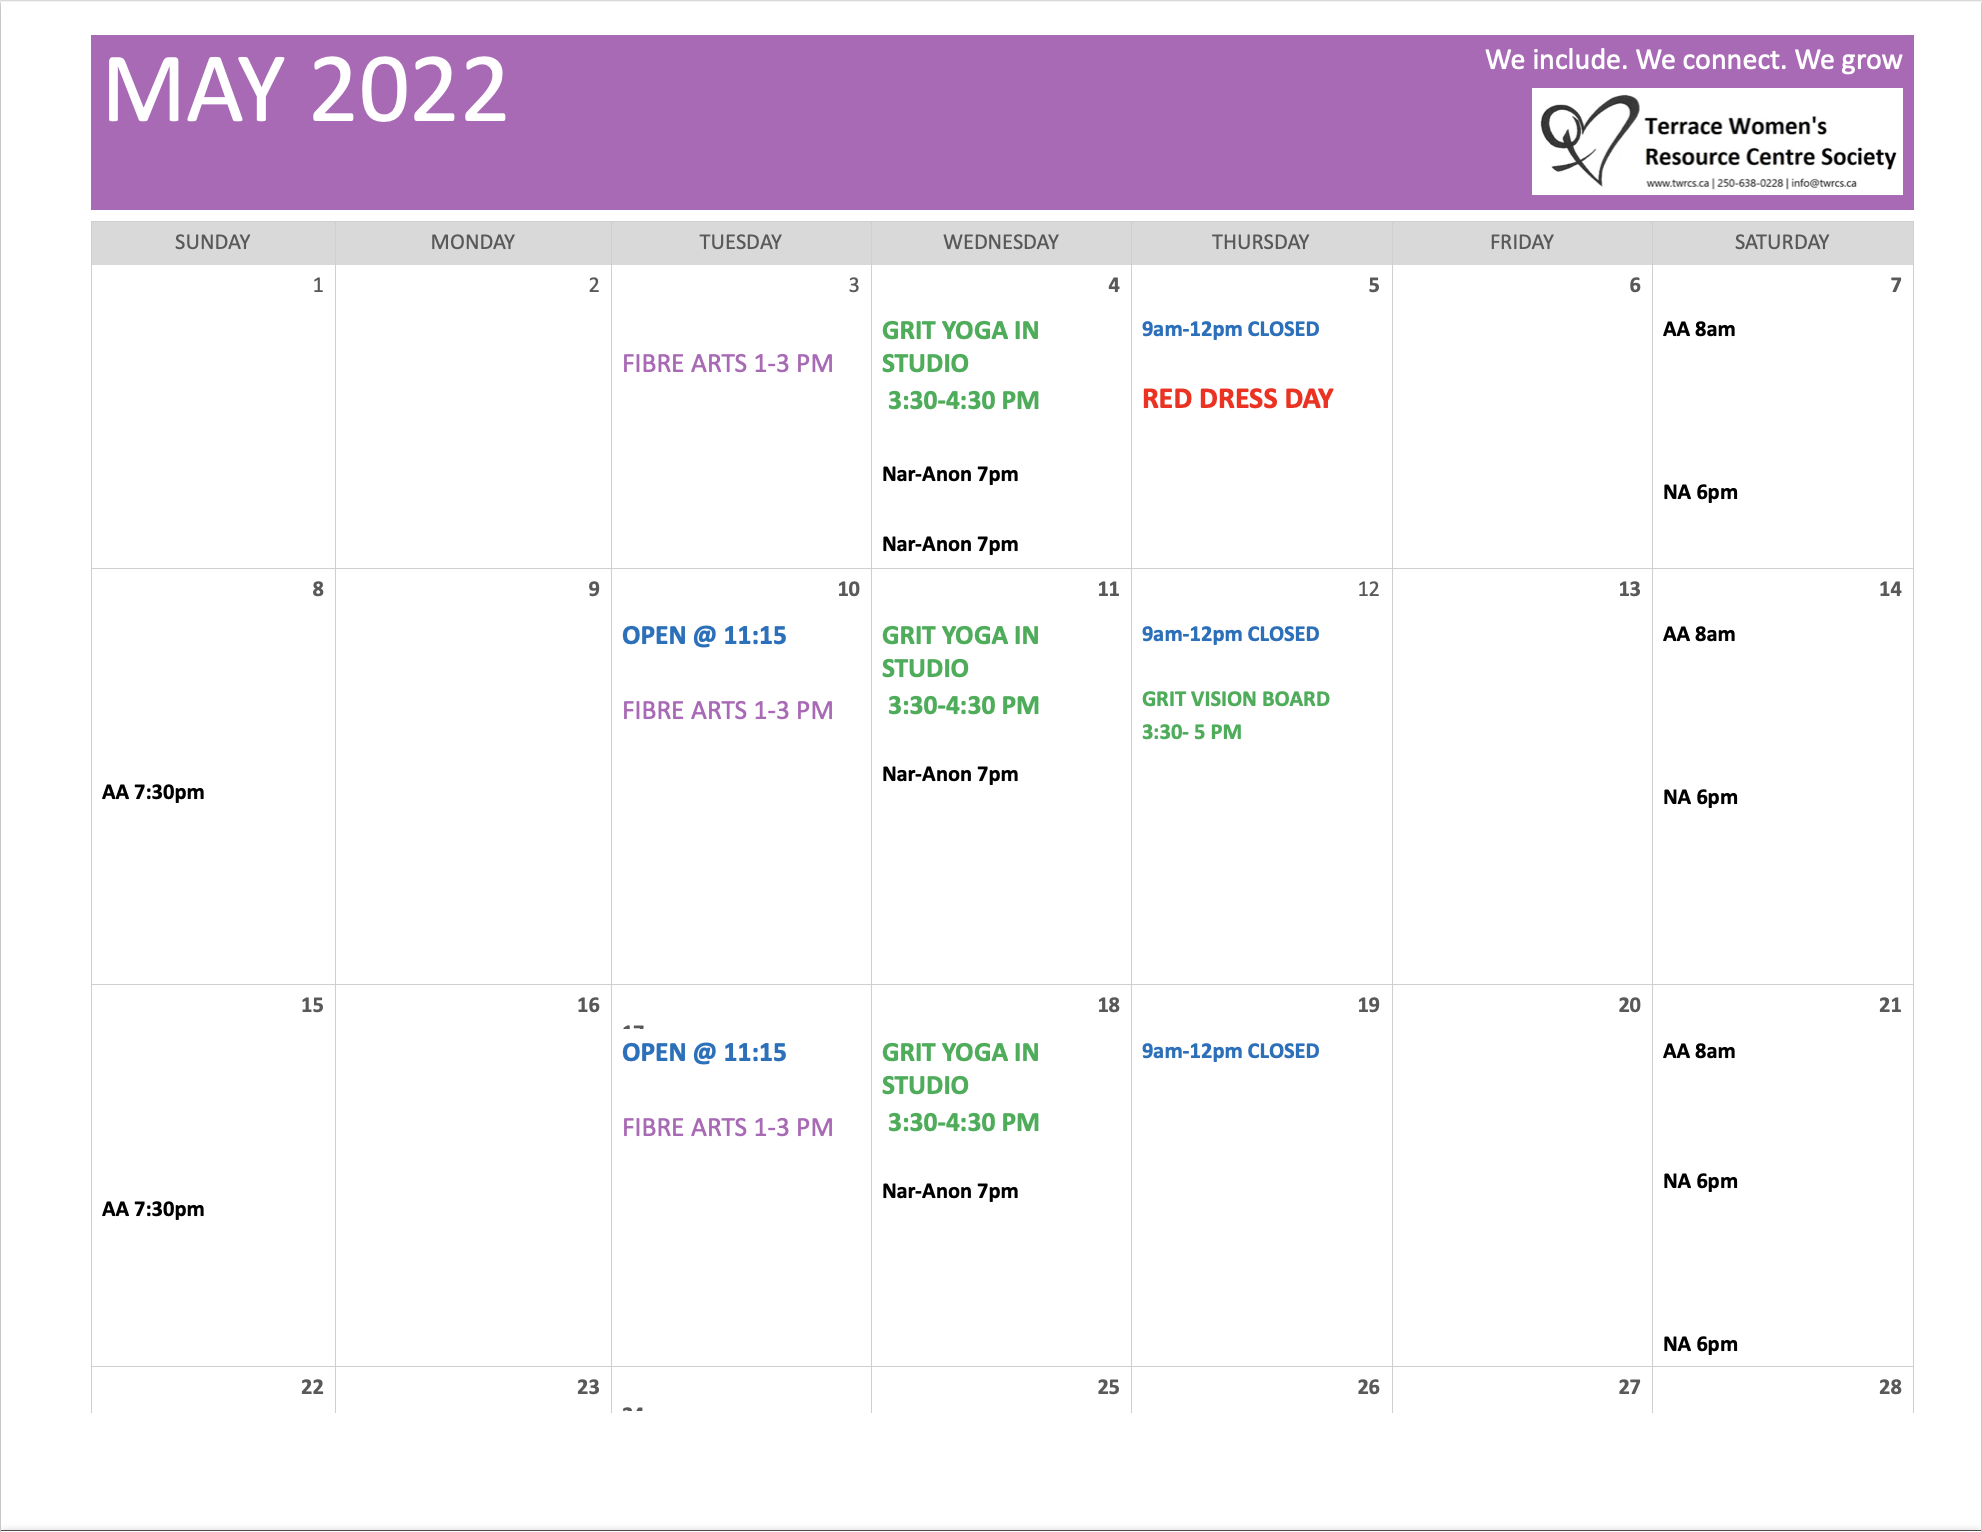 TWRCS_May 2022 Calendar